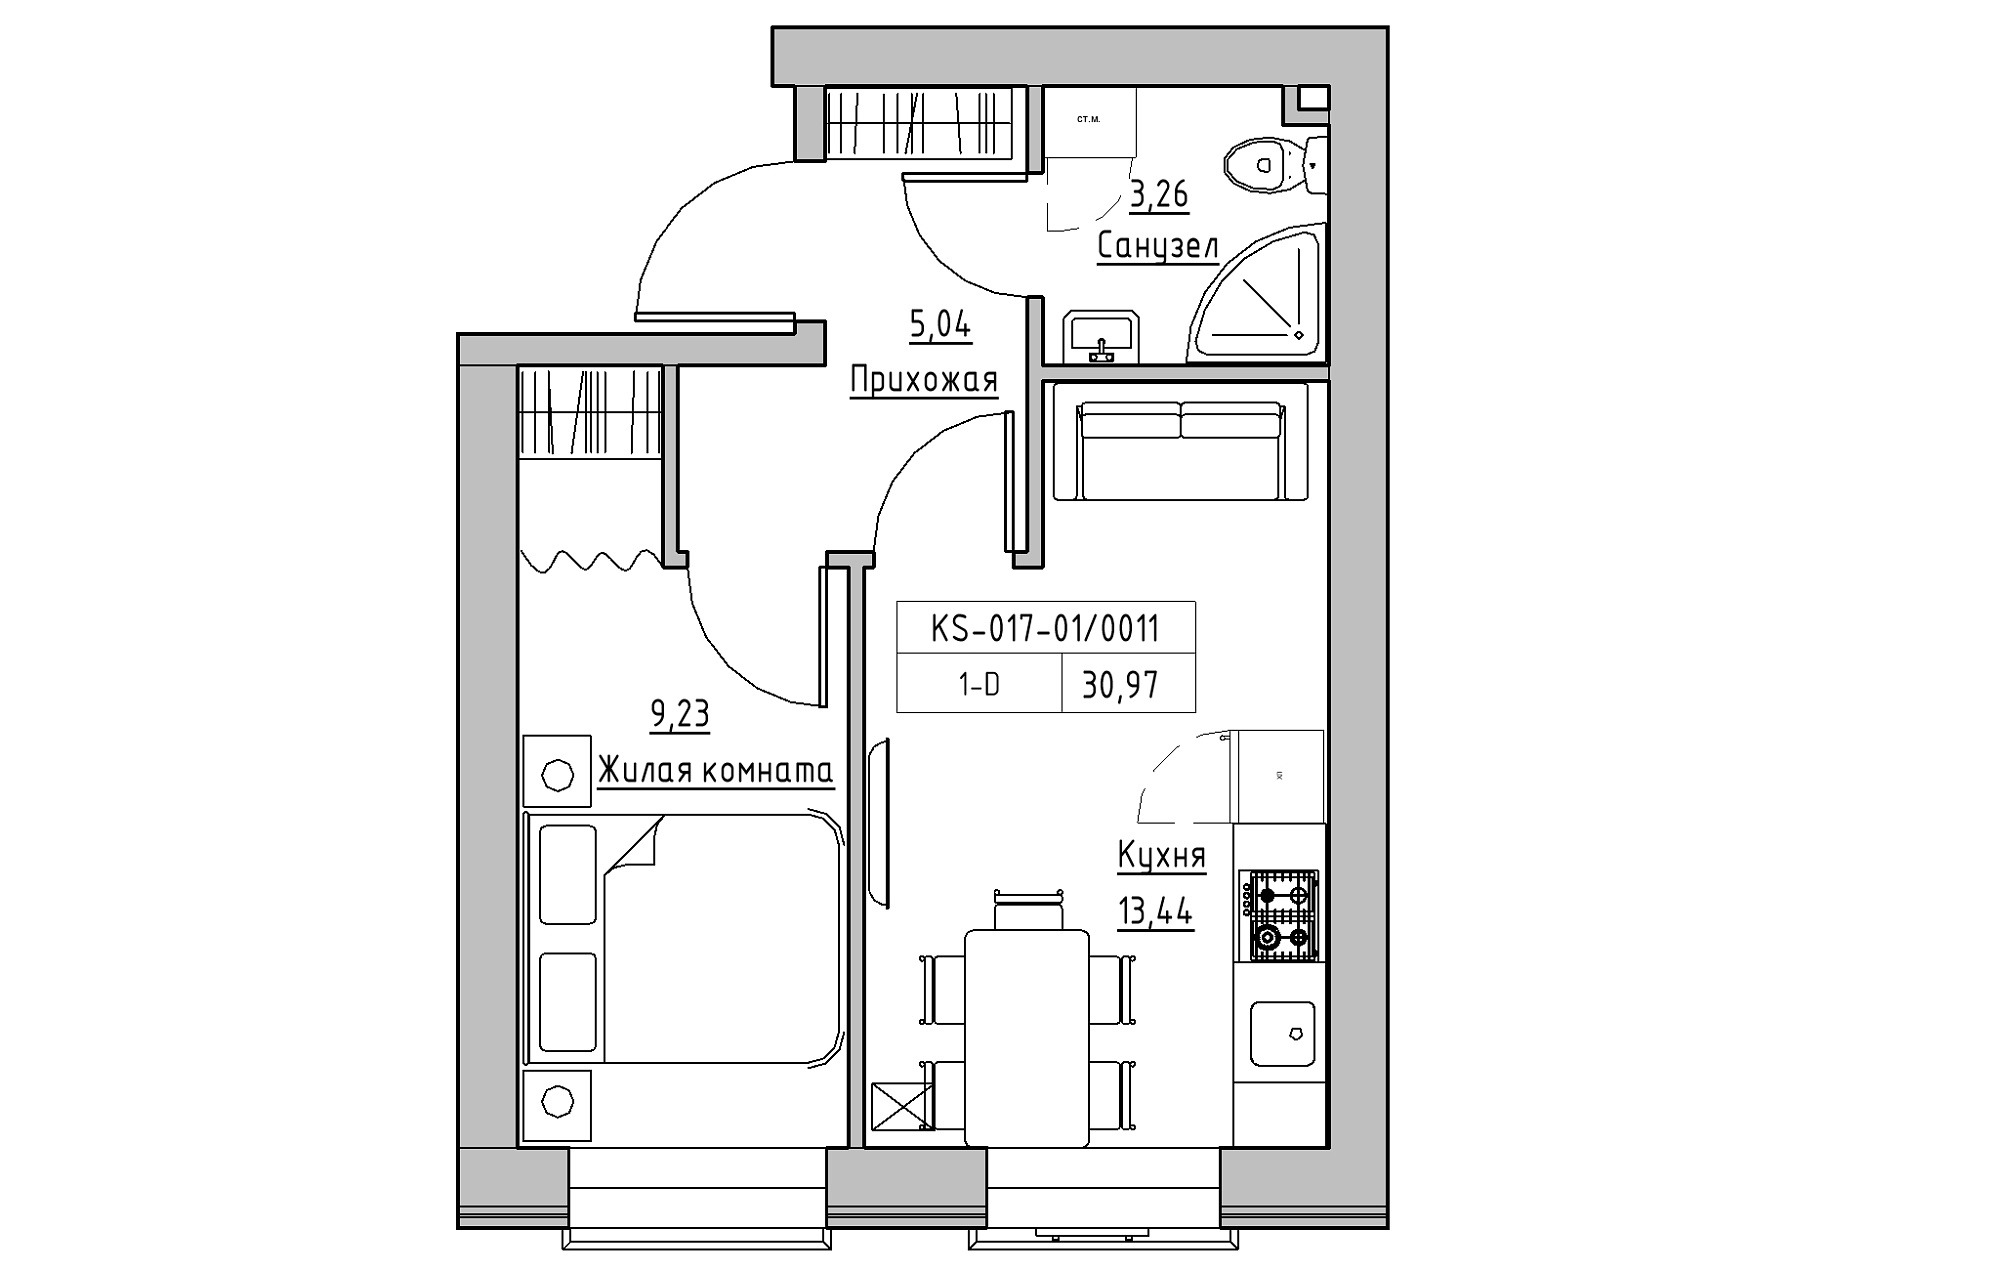 Планировка 1-к квартира площей 30.97м2, KS-017-01/0011.